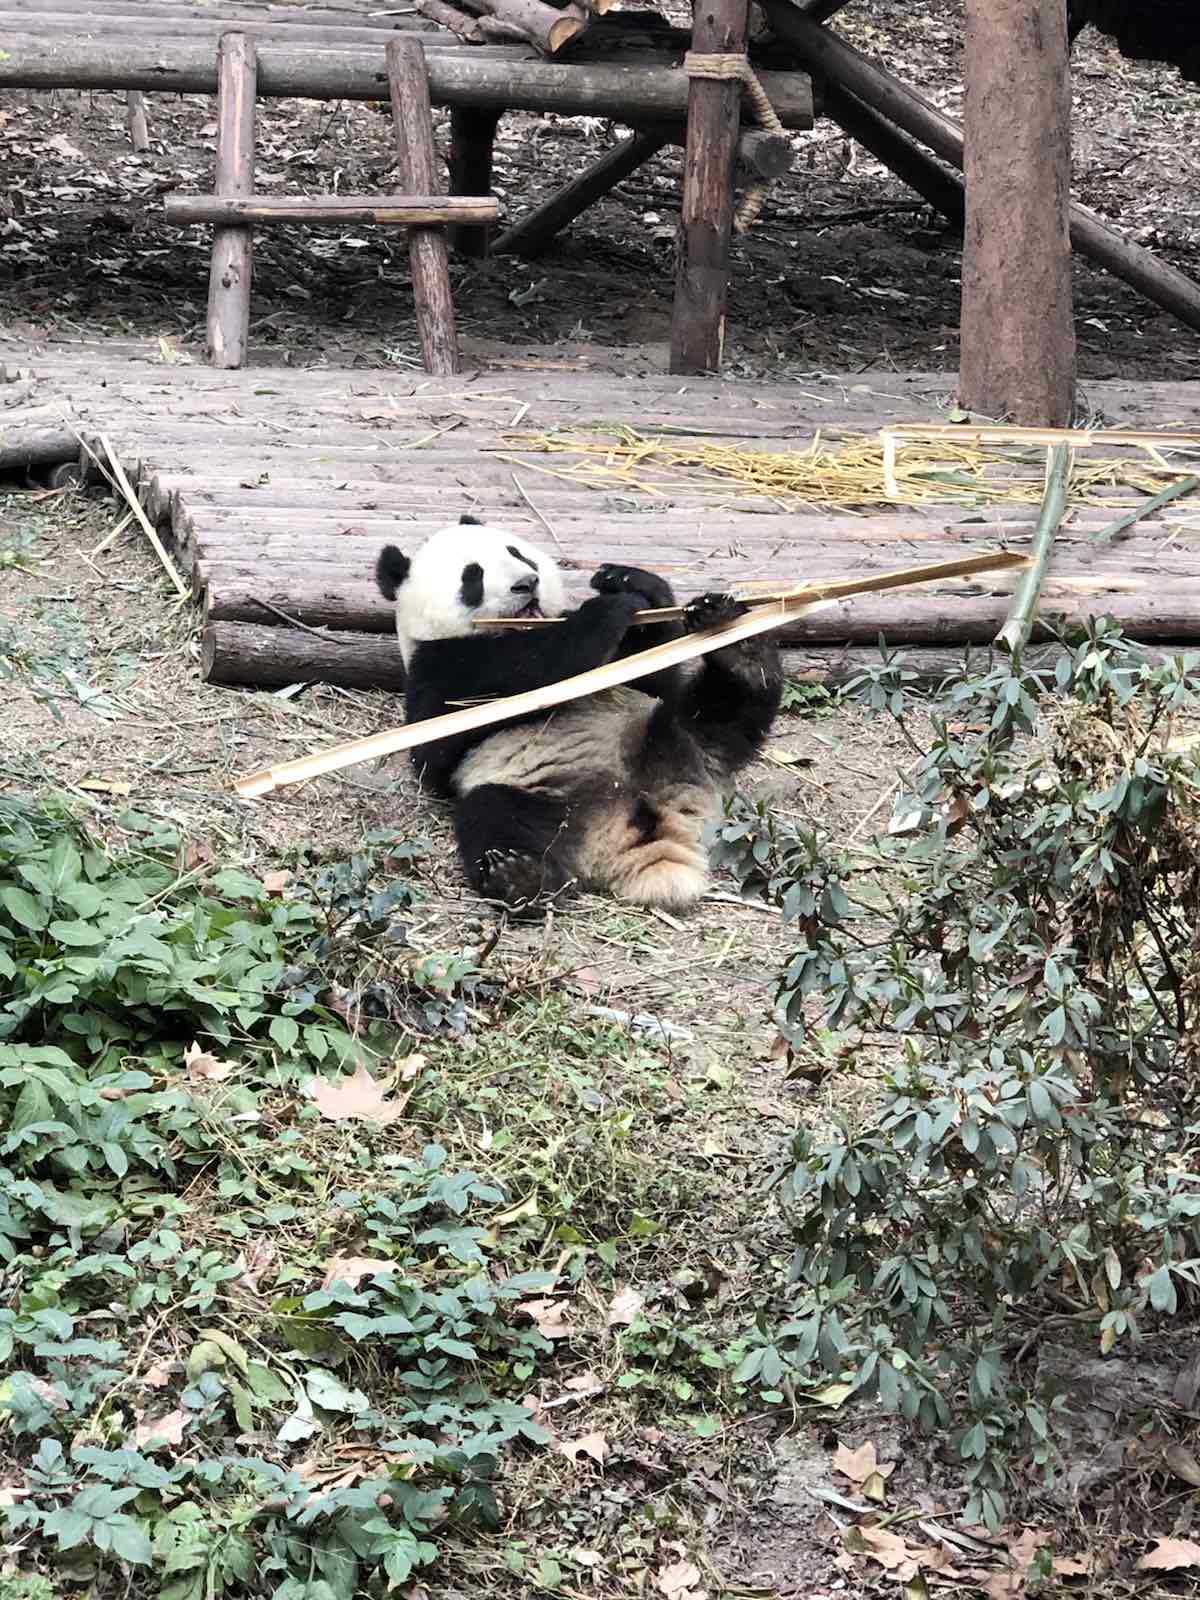 熊猫特别可爱，很可惜去的时候没有开放熊猫保育员计划，没有预约到摸熊猫，